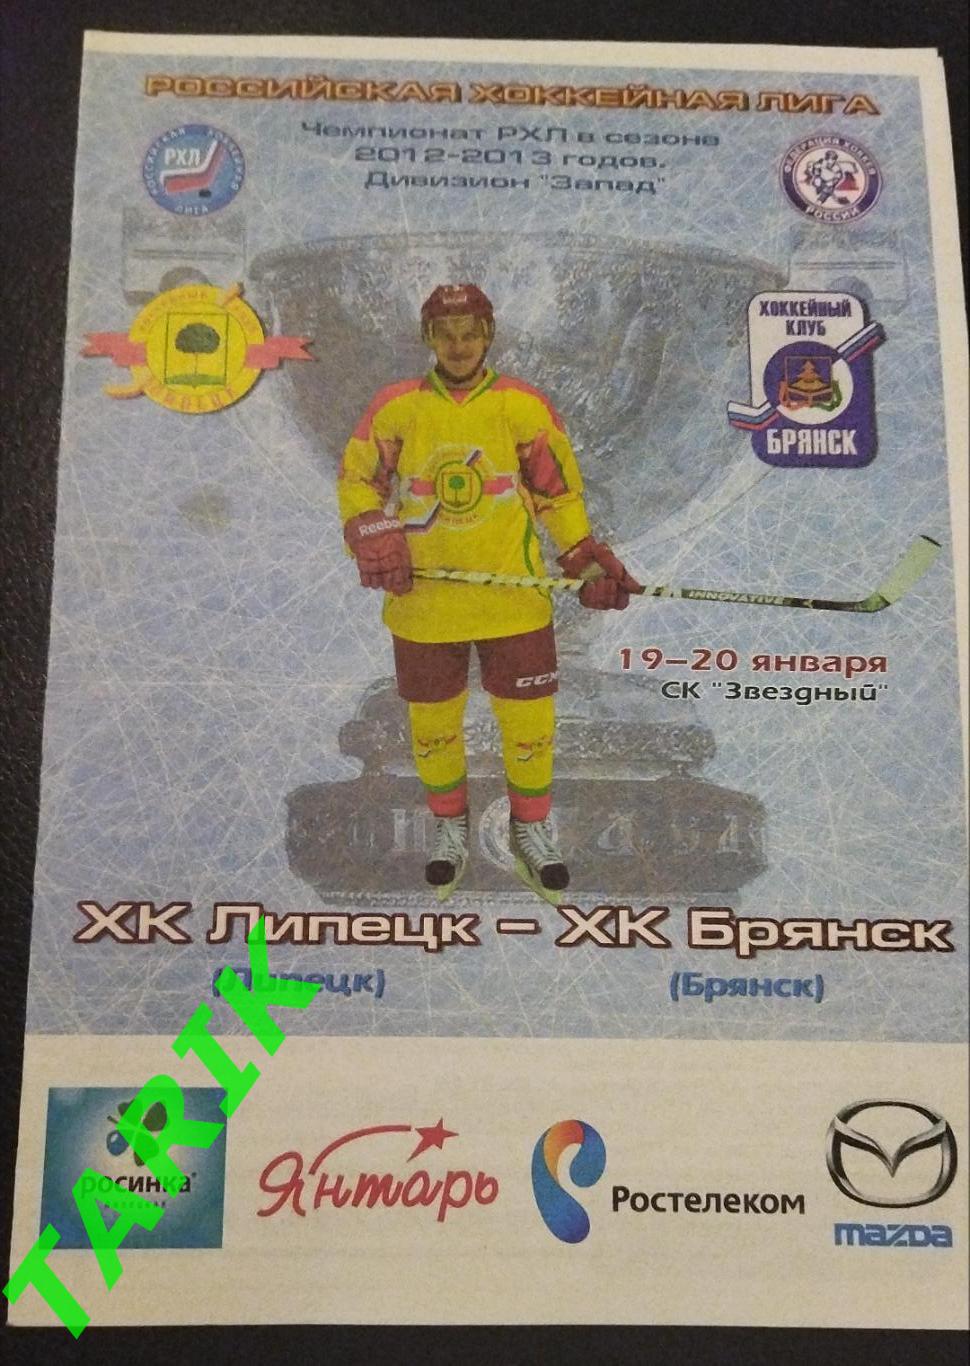 Хоккей ХК Липецк -ХК Брянск 19-20.01.2013